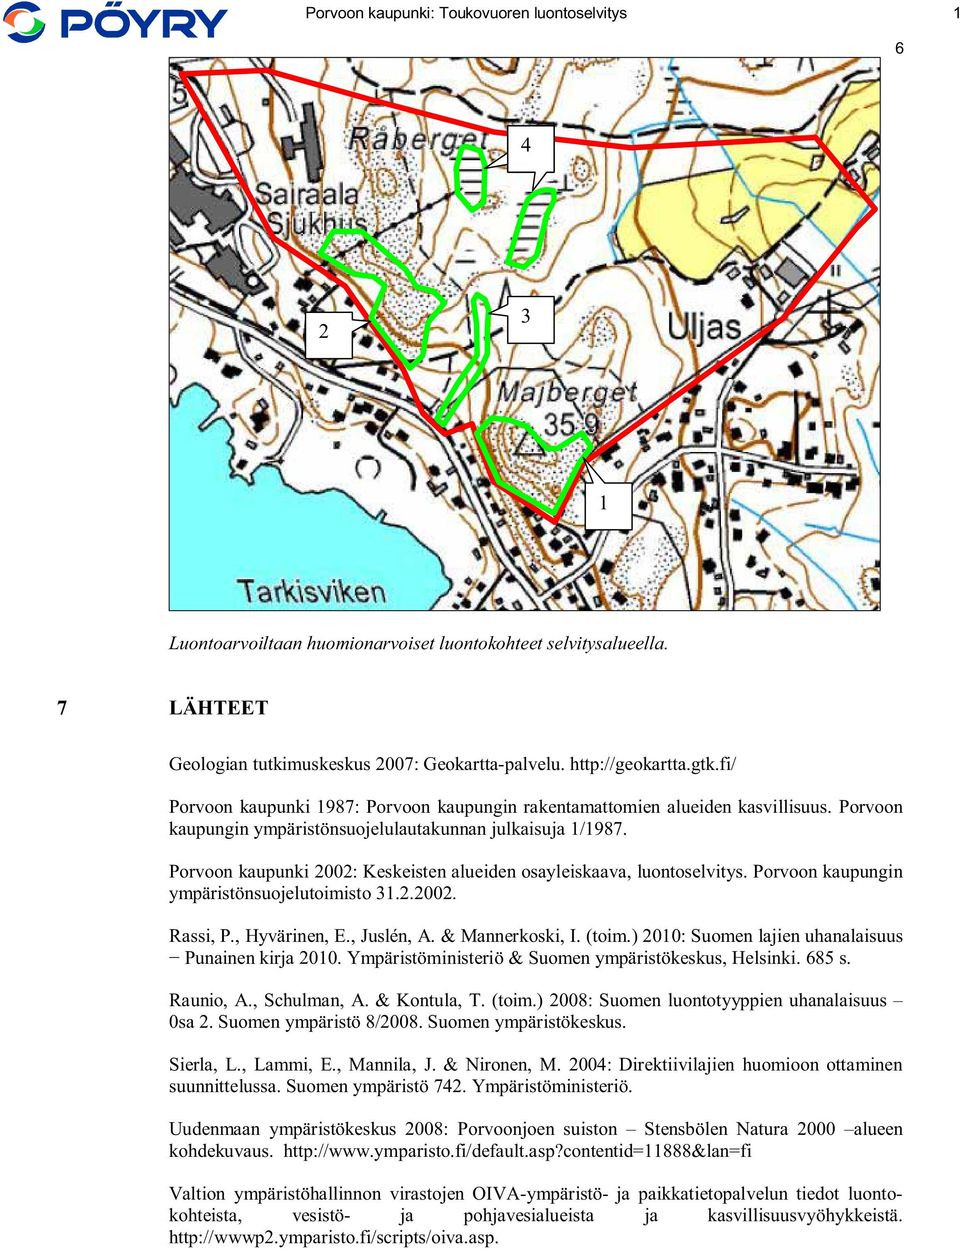 Porvoon kaupunki 2002: Keskeisten alueiden osayleiskaava, luontoselvitys. Porvoon kaupungin ympäristönsuojelutoimisto 31.2.2002. Rassi, P., Hyvärinen, E., Juslén, A. & Mannerkoski, I. (toim.